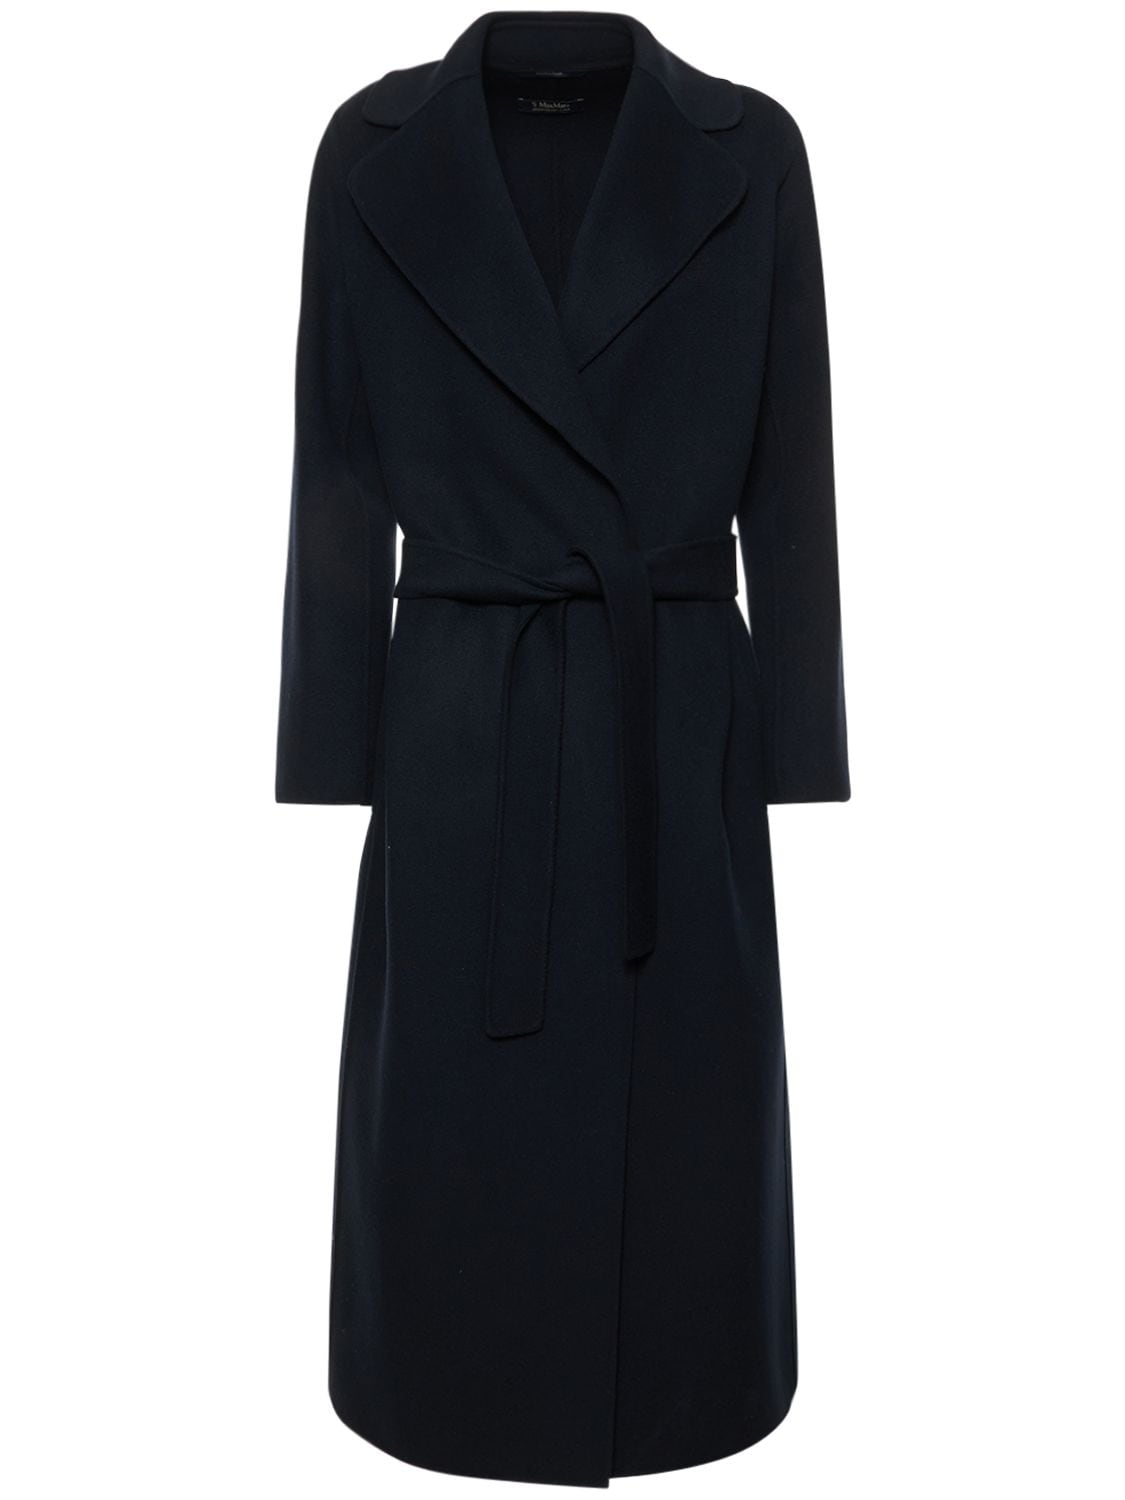 'S Max Mara - Poldo double drap belted midi coat - Navy | Luisaviaroma